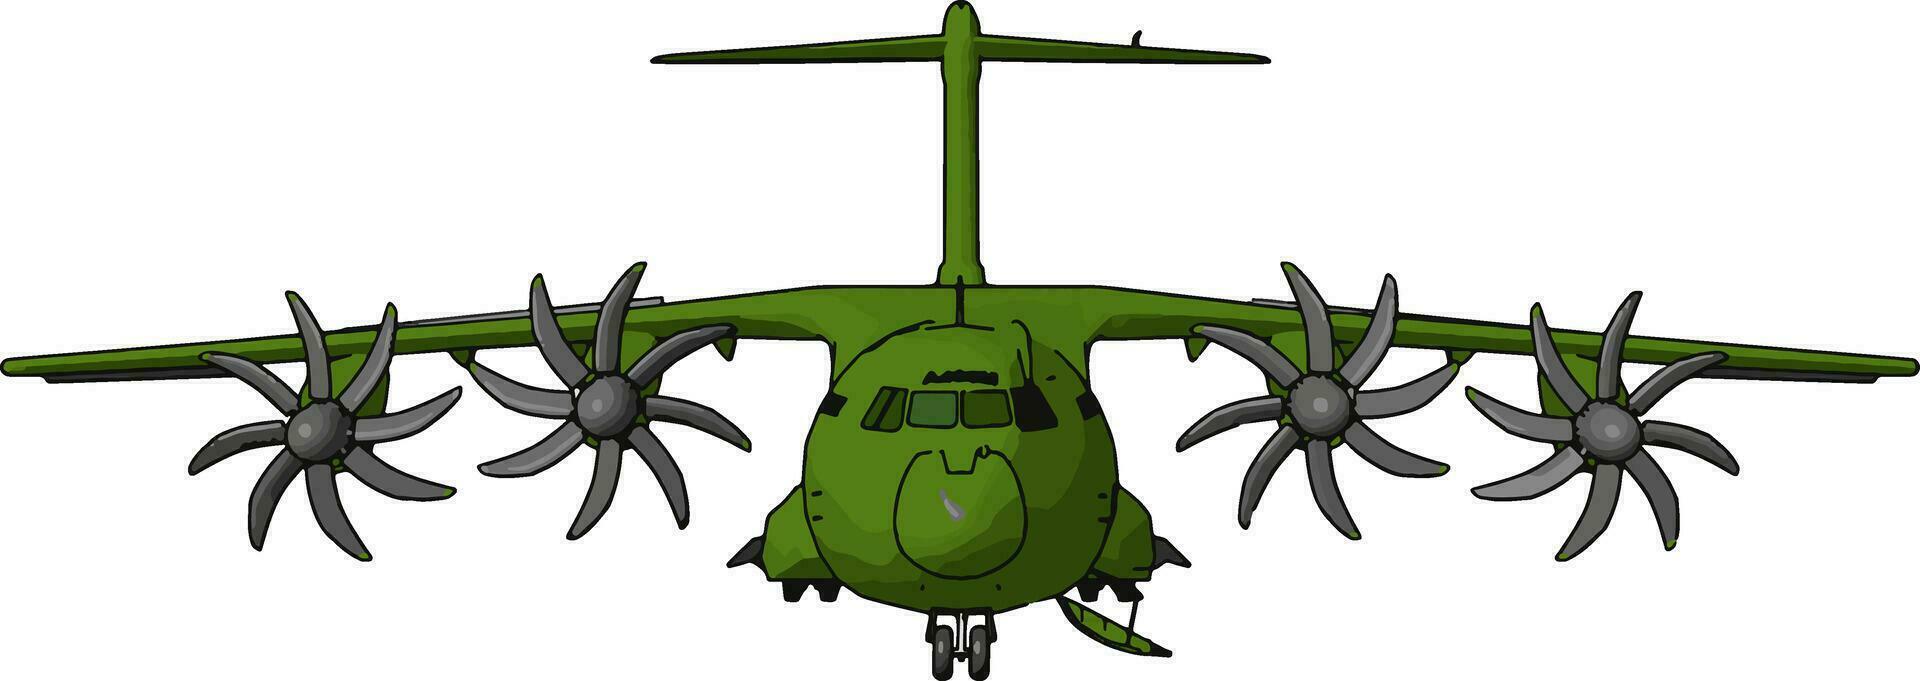 Hércules- histórico militares aeronave vetor ou cor ilustração